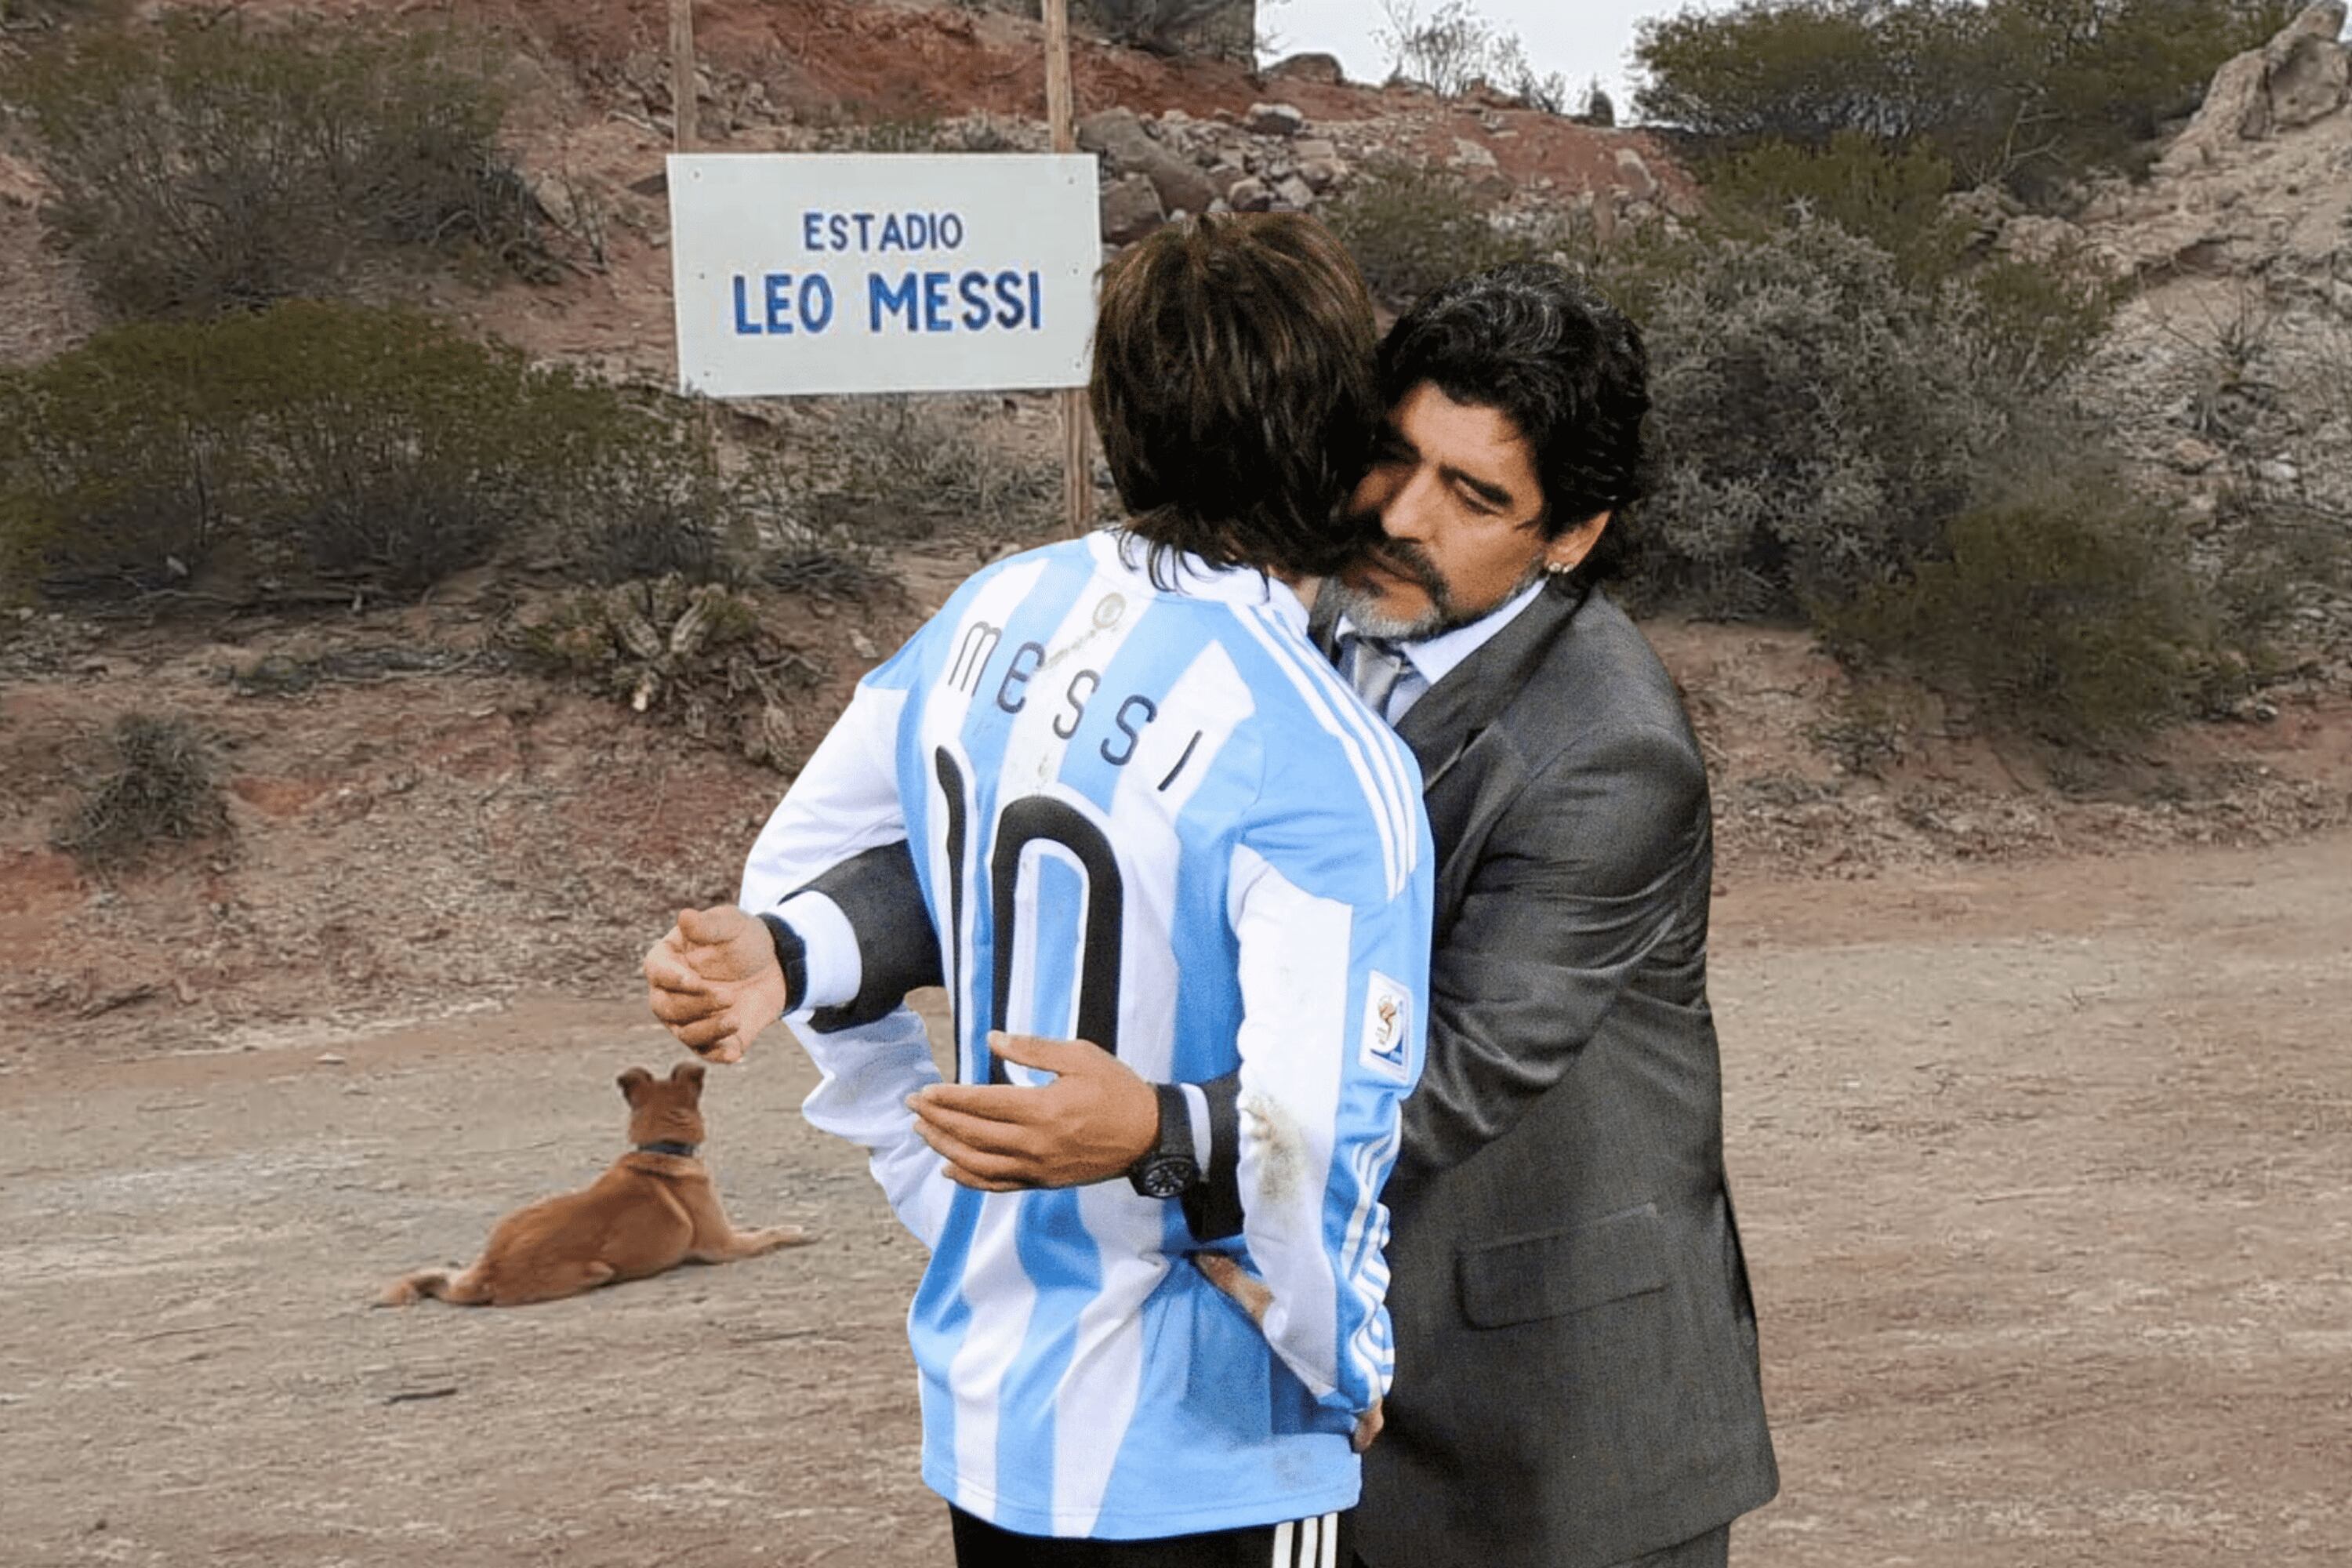 Mientras Maradona tiene 3 estadios, mira la humilde cancha que se llama Leo Messi